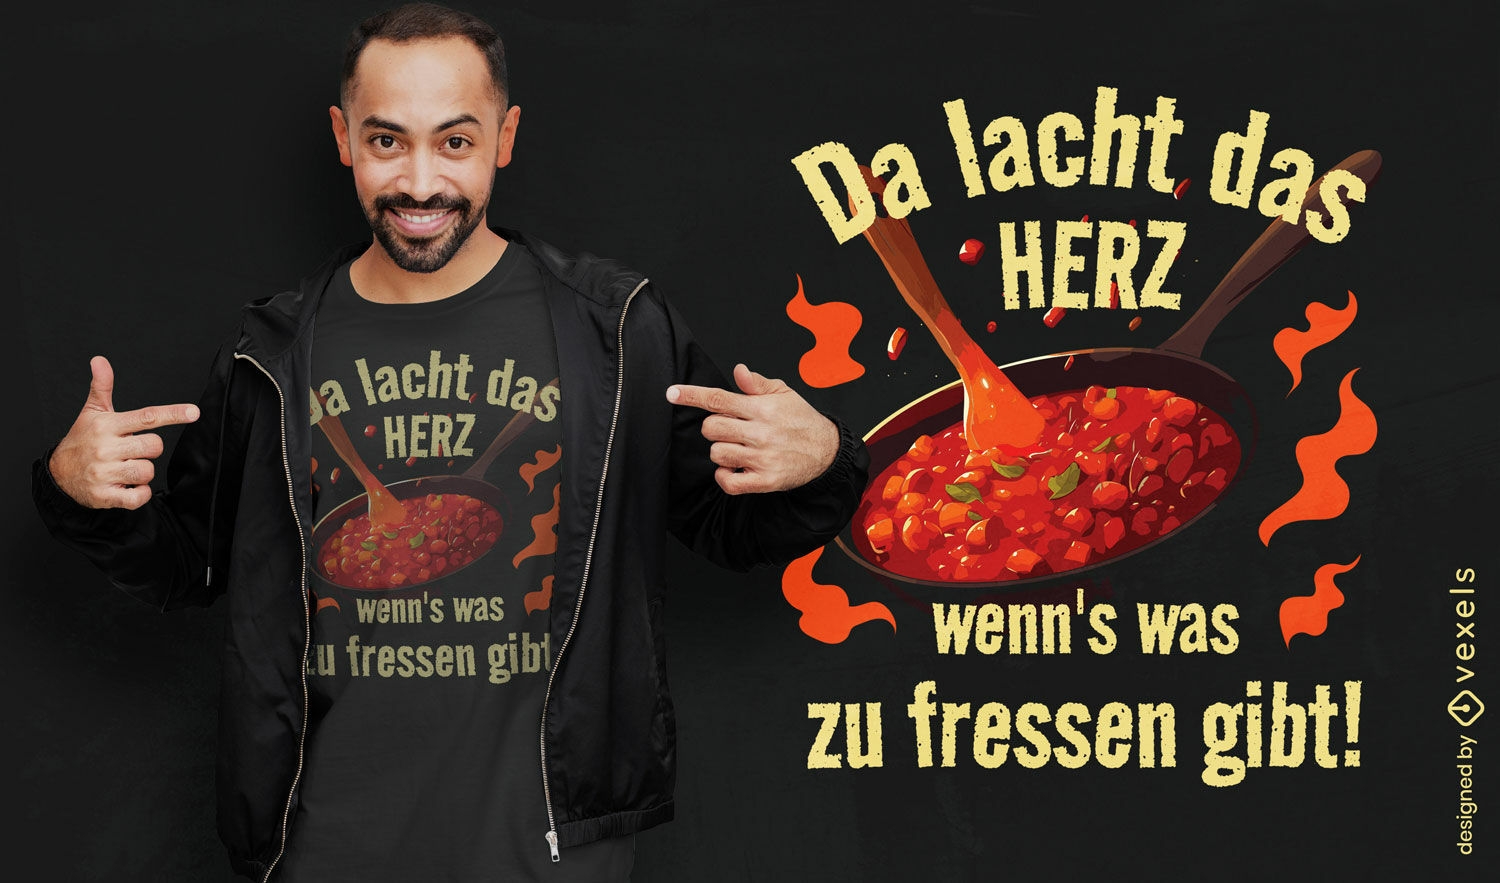 Deutsches kulinarisches Zitat-T-Shirt-Design